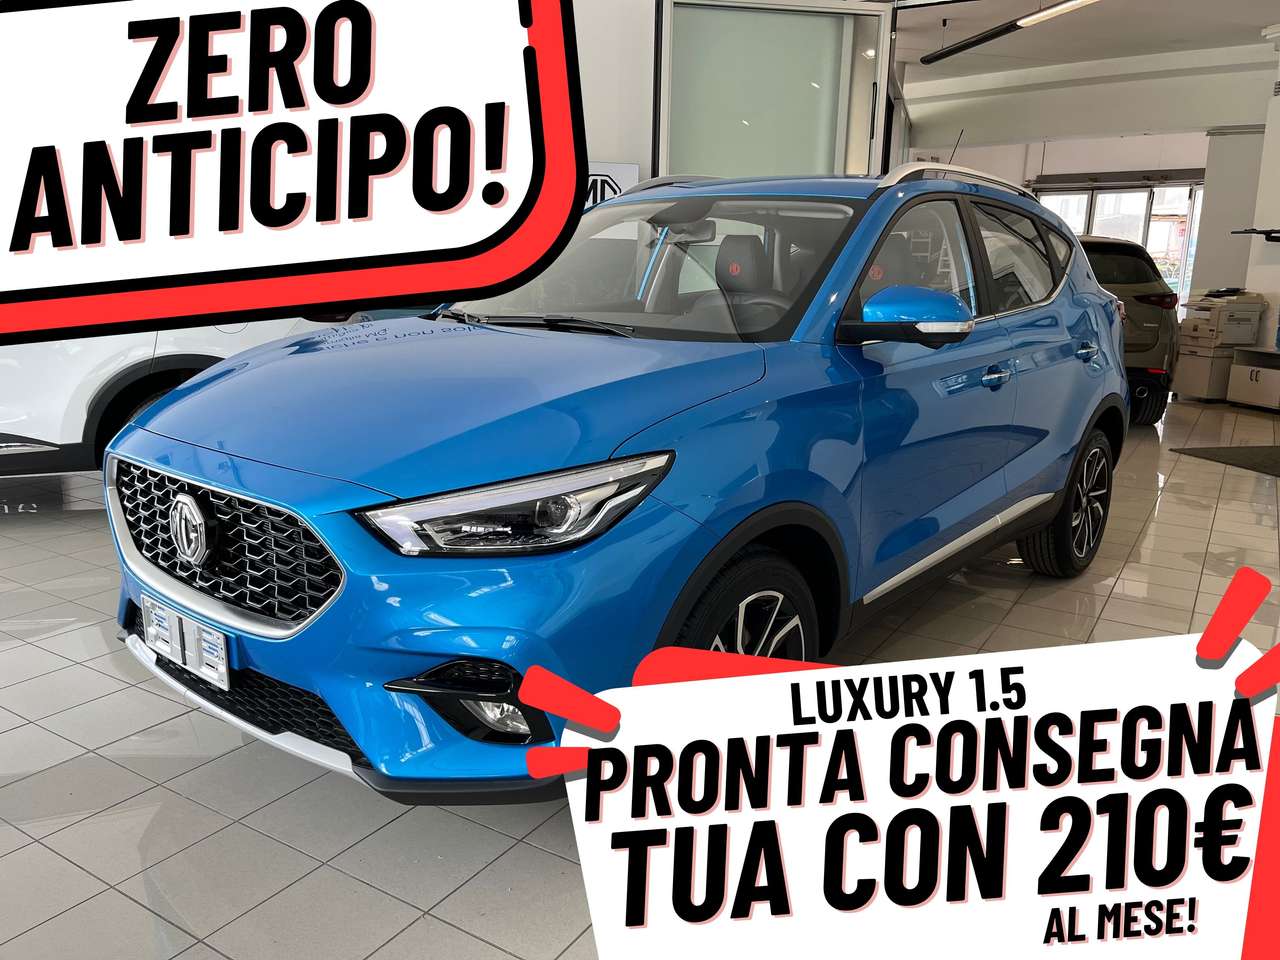 MG ZS LUXURY ANTICIPO 0 CON 210€/MESE TUTTO COMPRESO